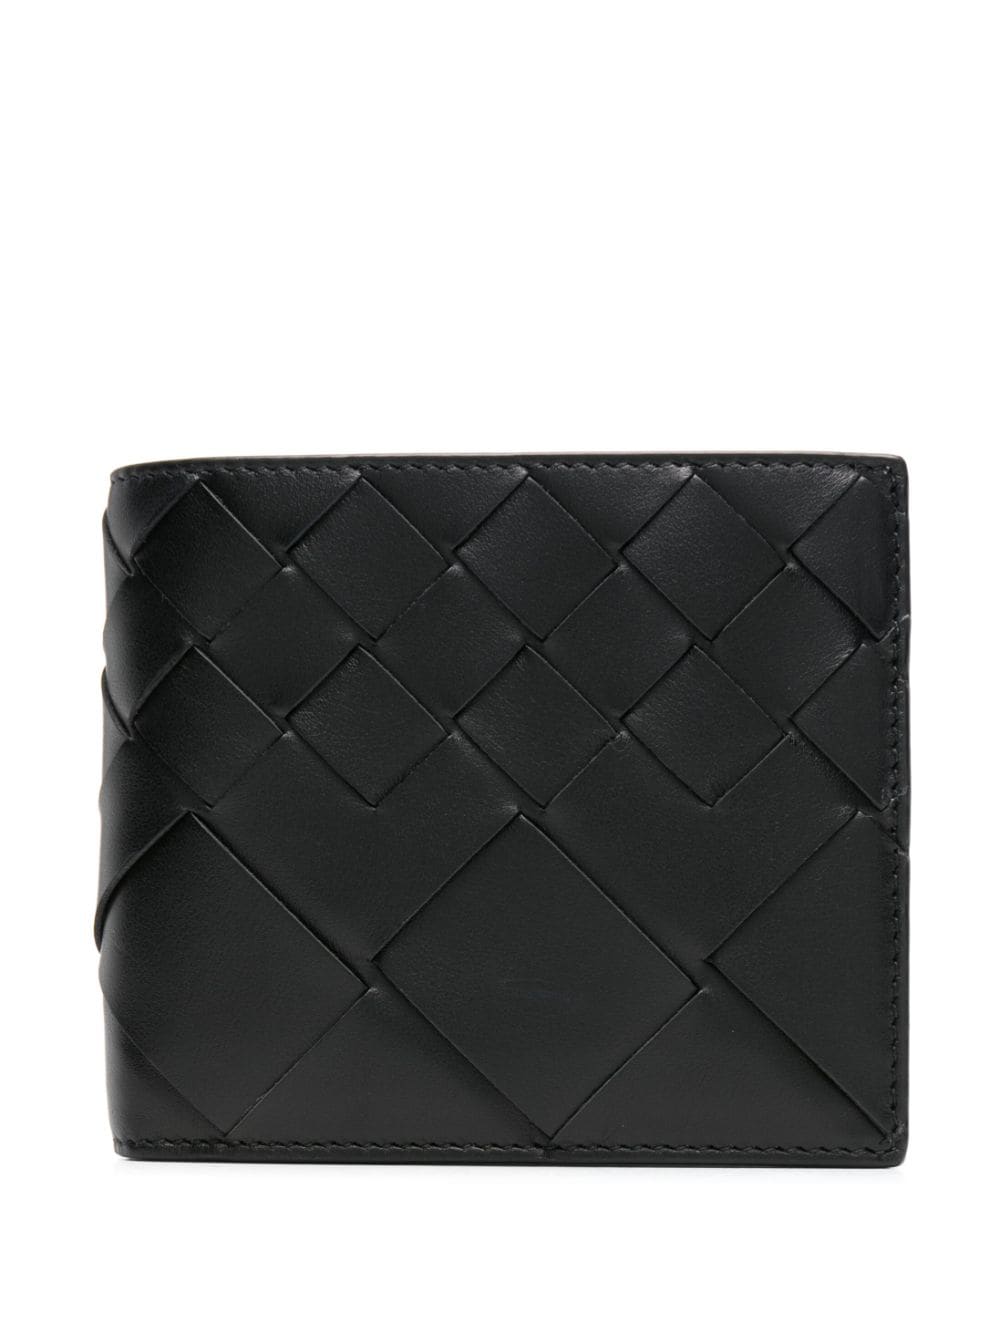 Bottega Veneta Avenue Intrecciato-leather wallet - Black von Bottega Veneta